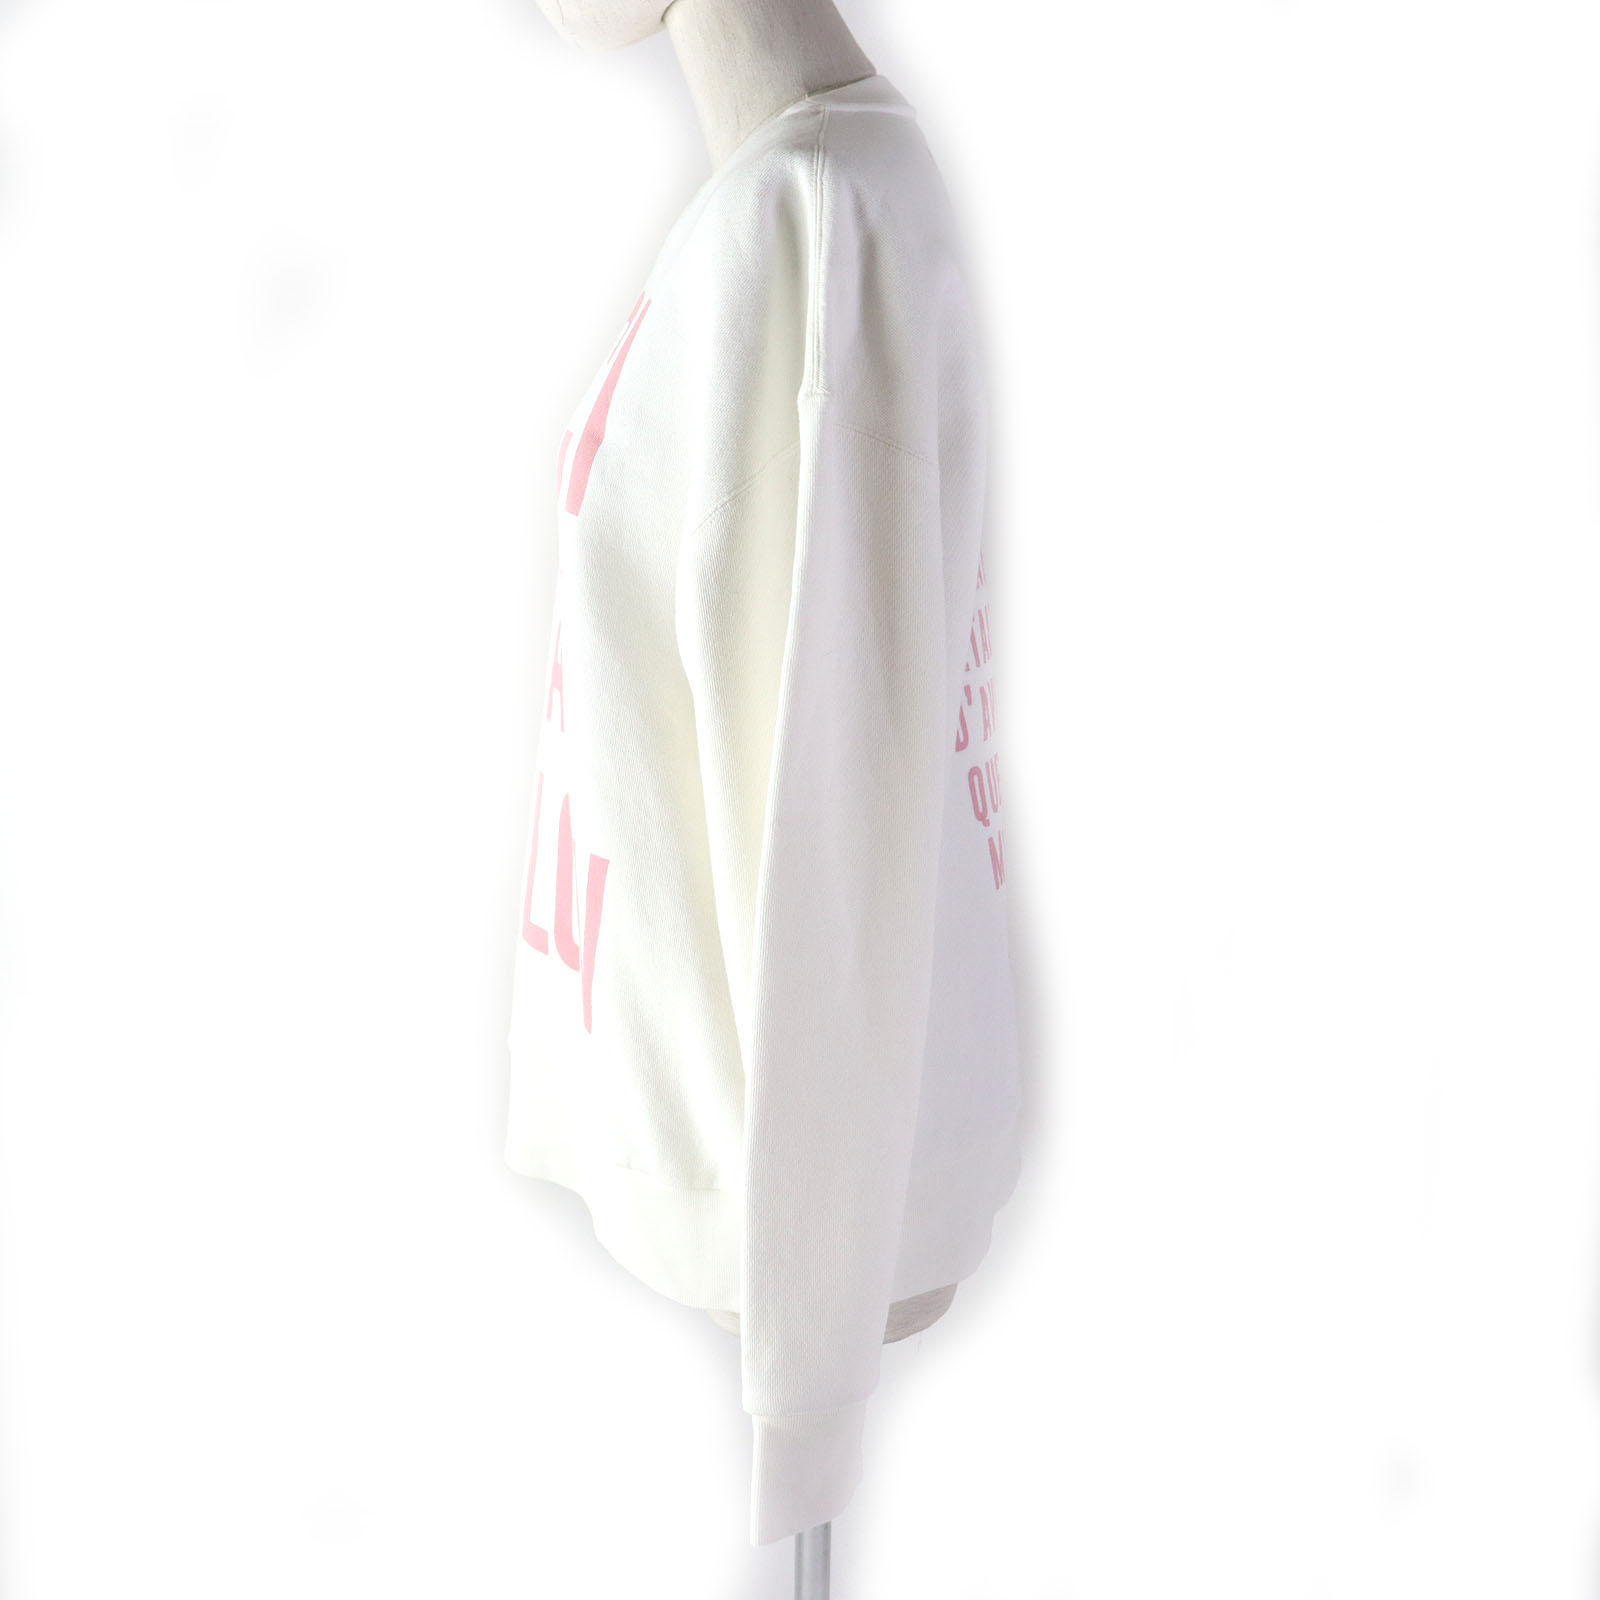  превосходный товар ^GUCCI Gucci 688219 хлопок JEAN HARLOW длинный рукав спортивная фуфайка футболка белый розовый S Италия производства стандартный товар женский 